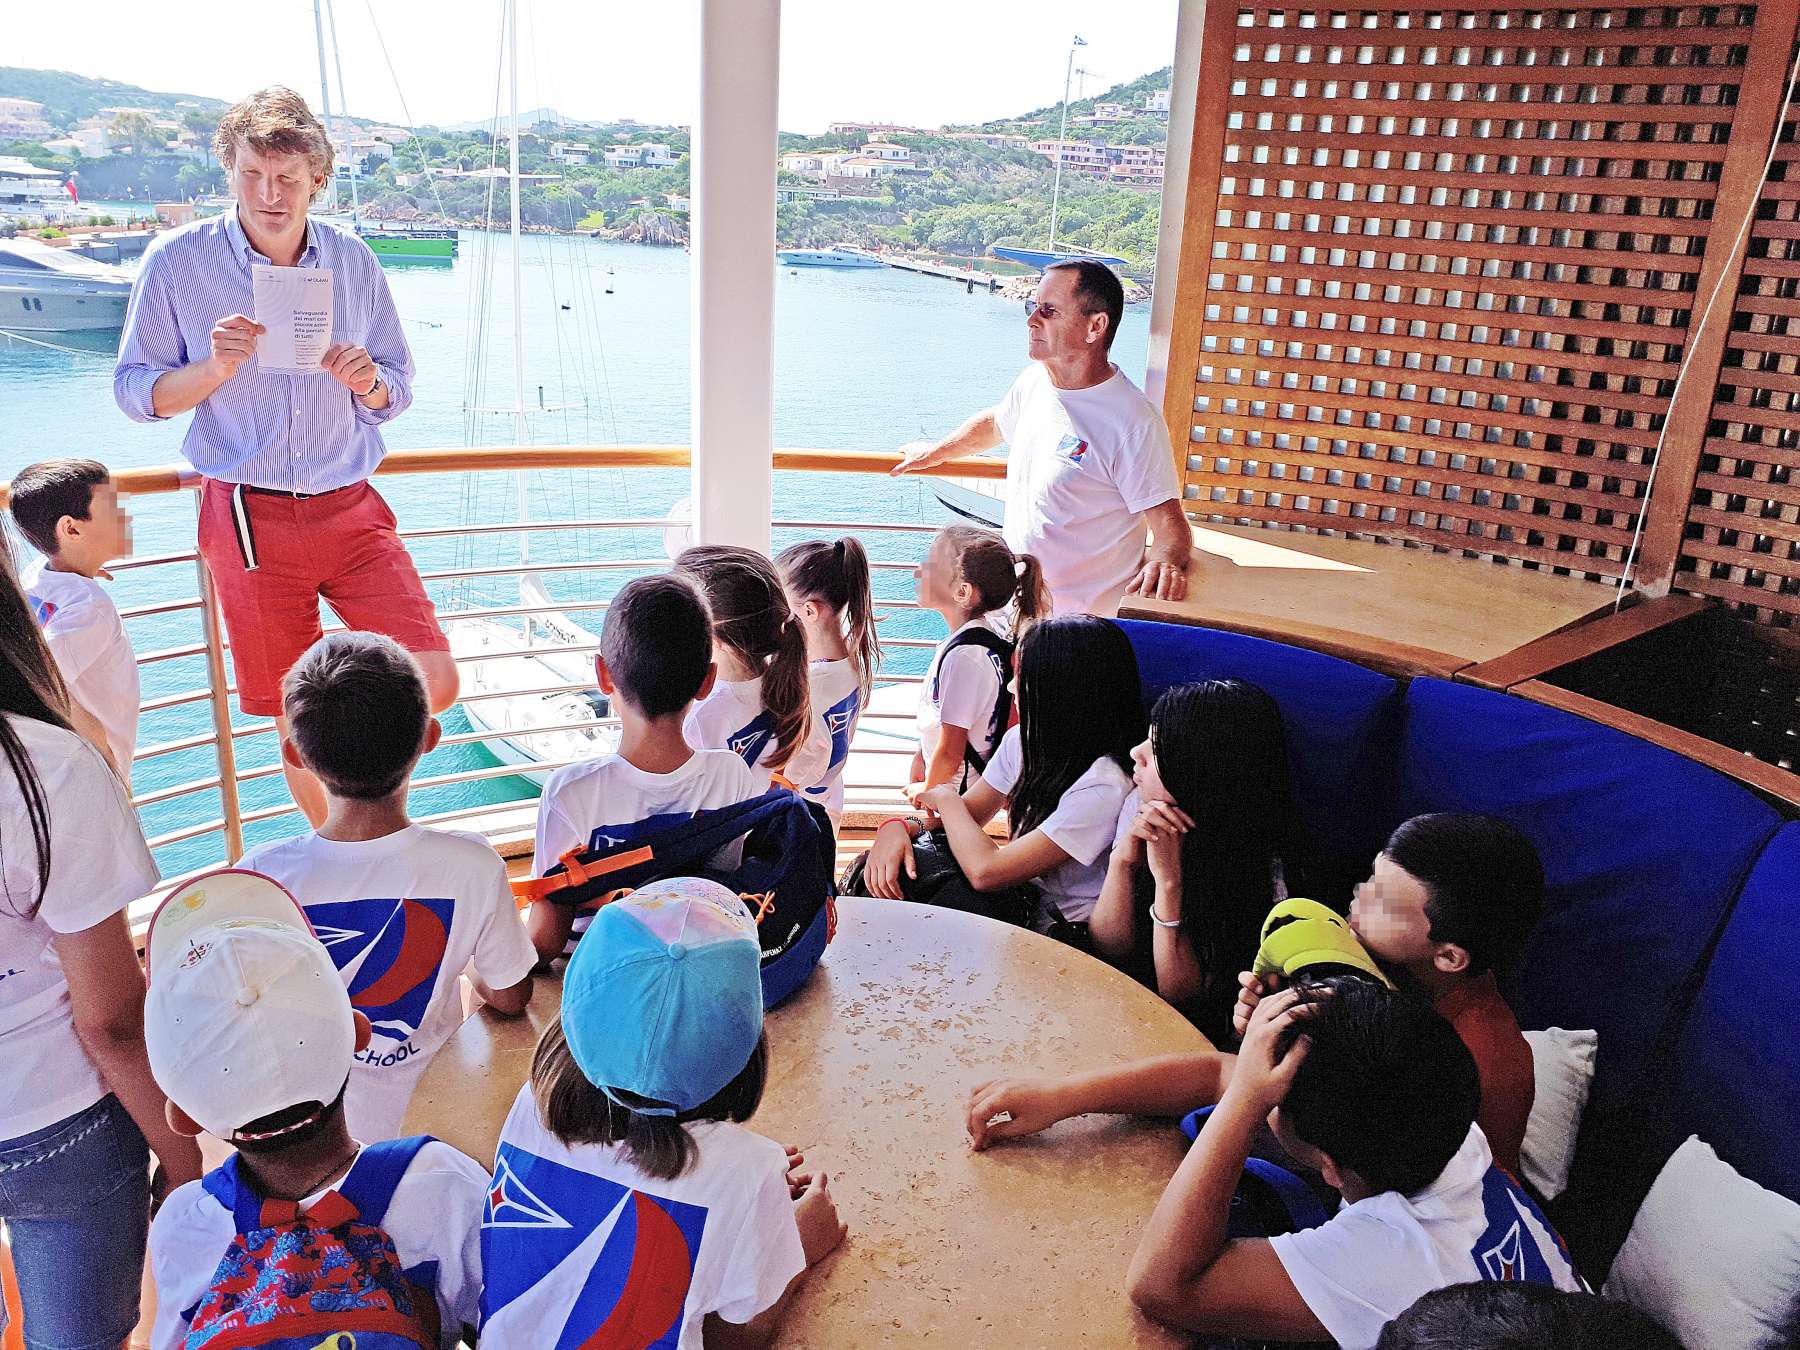 VELA DAY 2018 ALLA YCCS SAILING SCHOOL - NEWS - Yacht Club Costa Smeralda